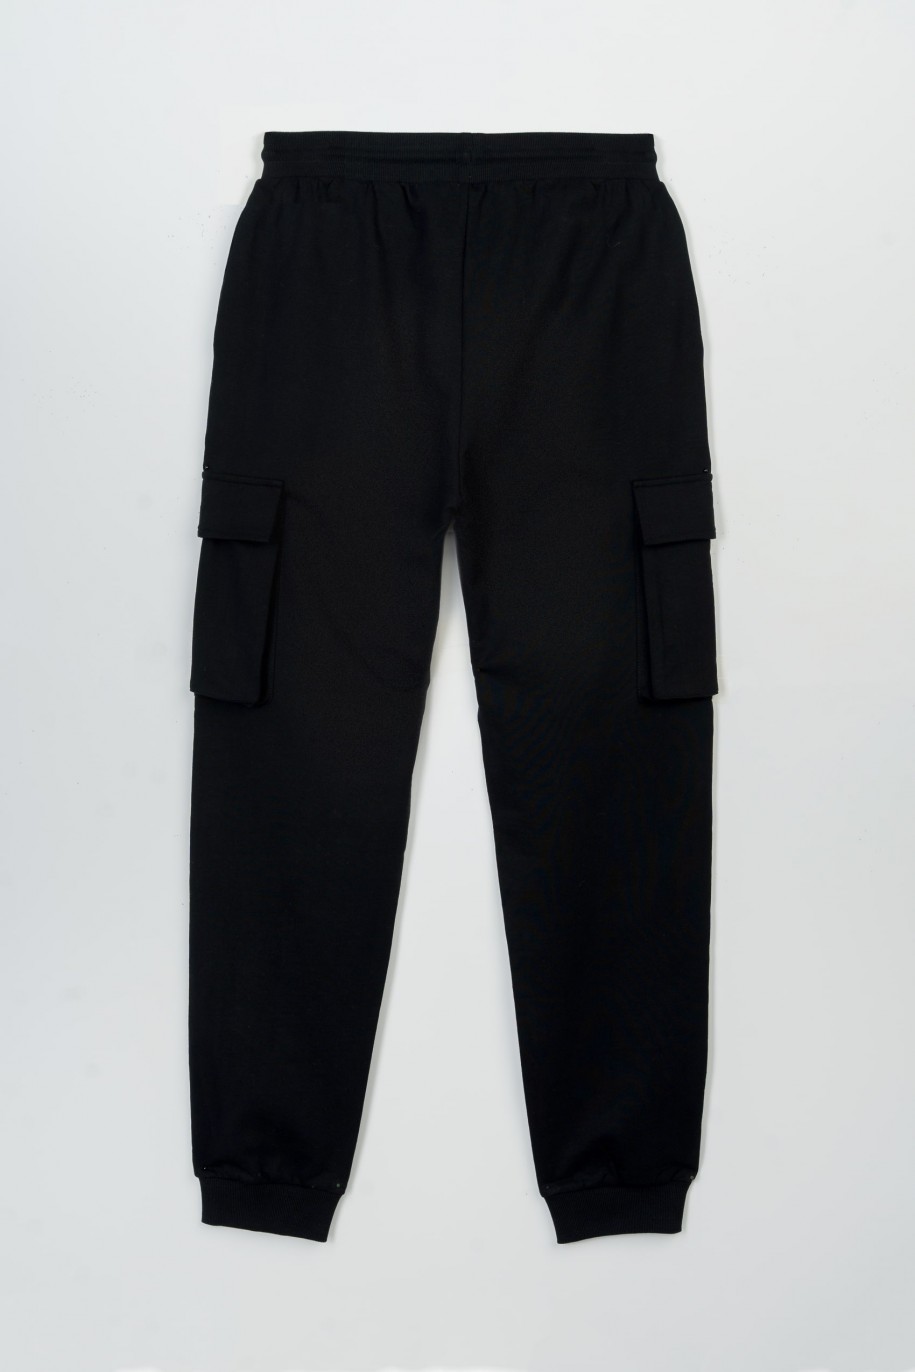 Czarne spodnie dresowe z przestrzennymi kieszeniami - 47408